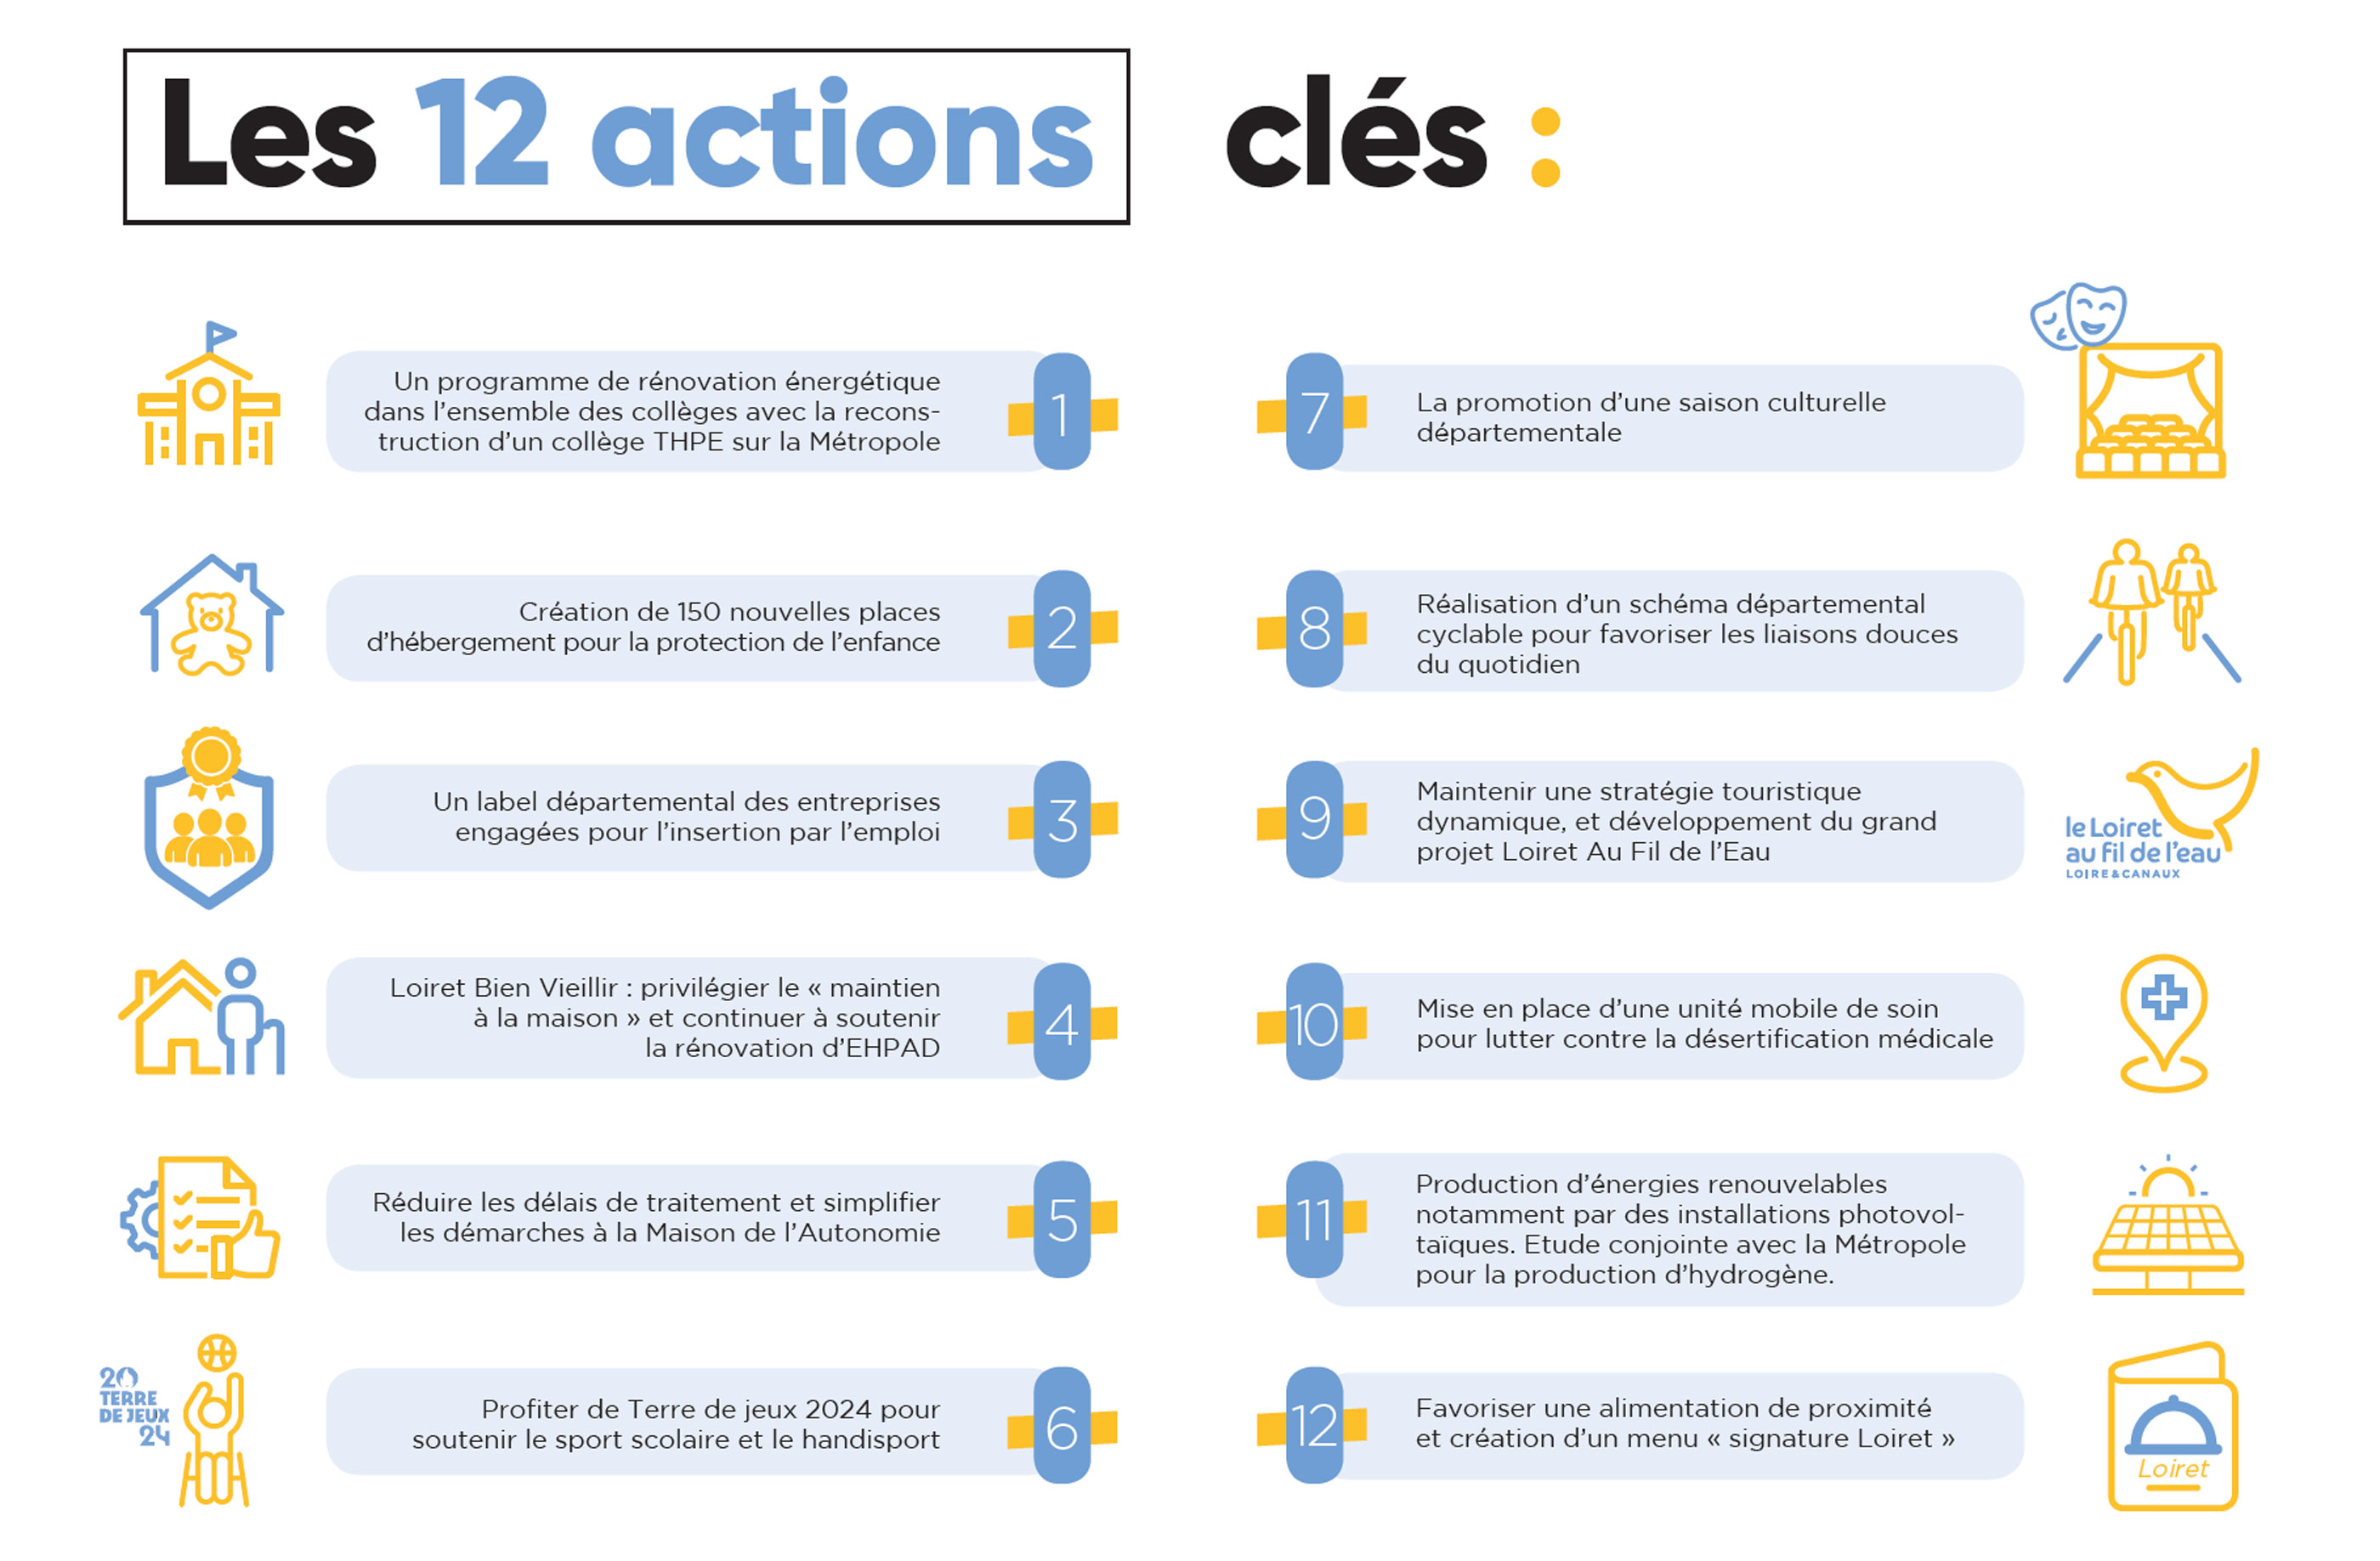 Les 12 actions-clés du projet de mandat 2021-2028